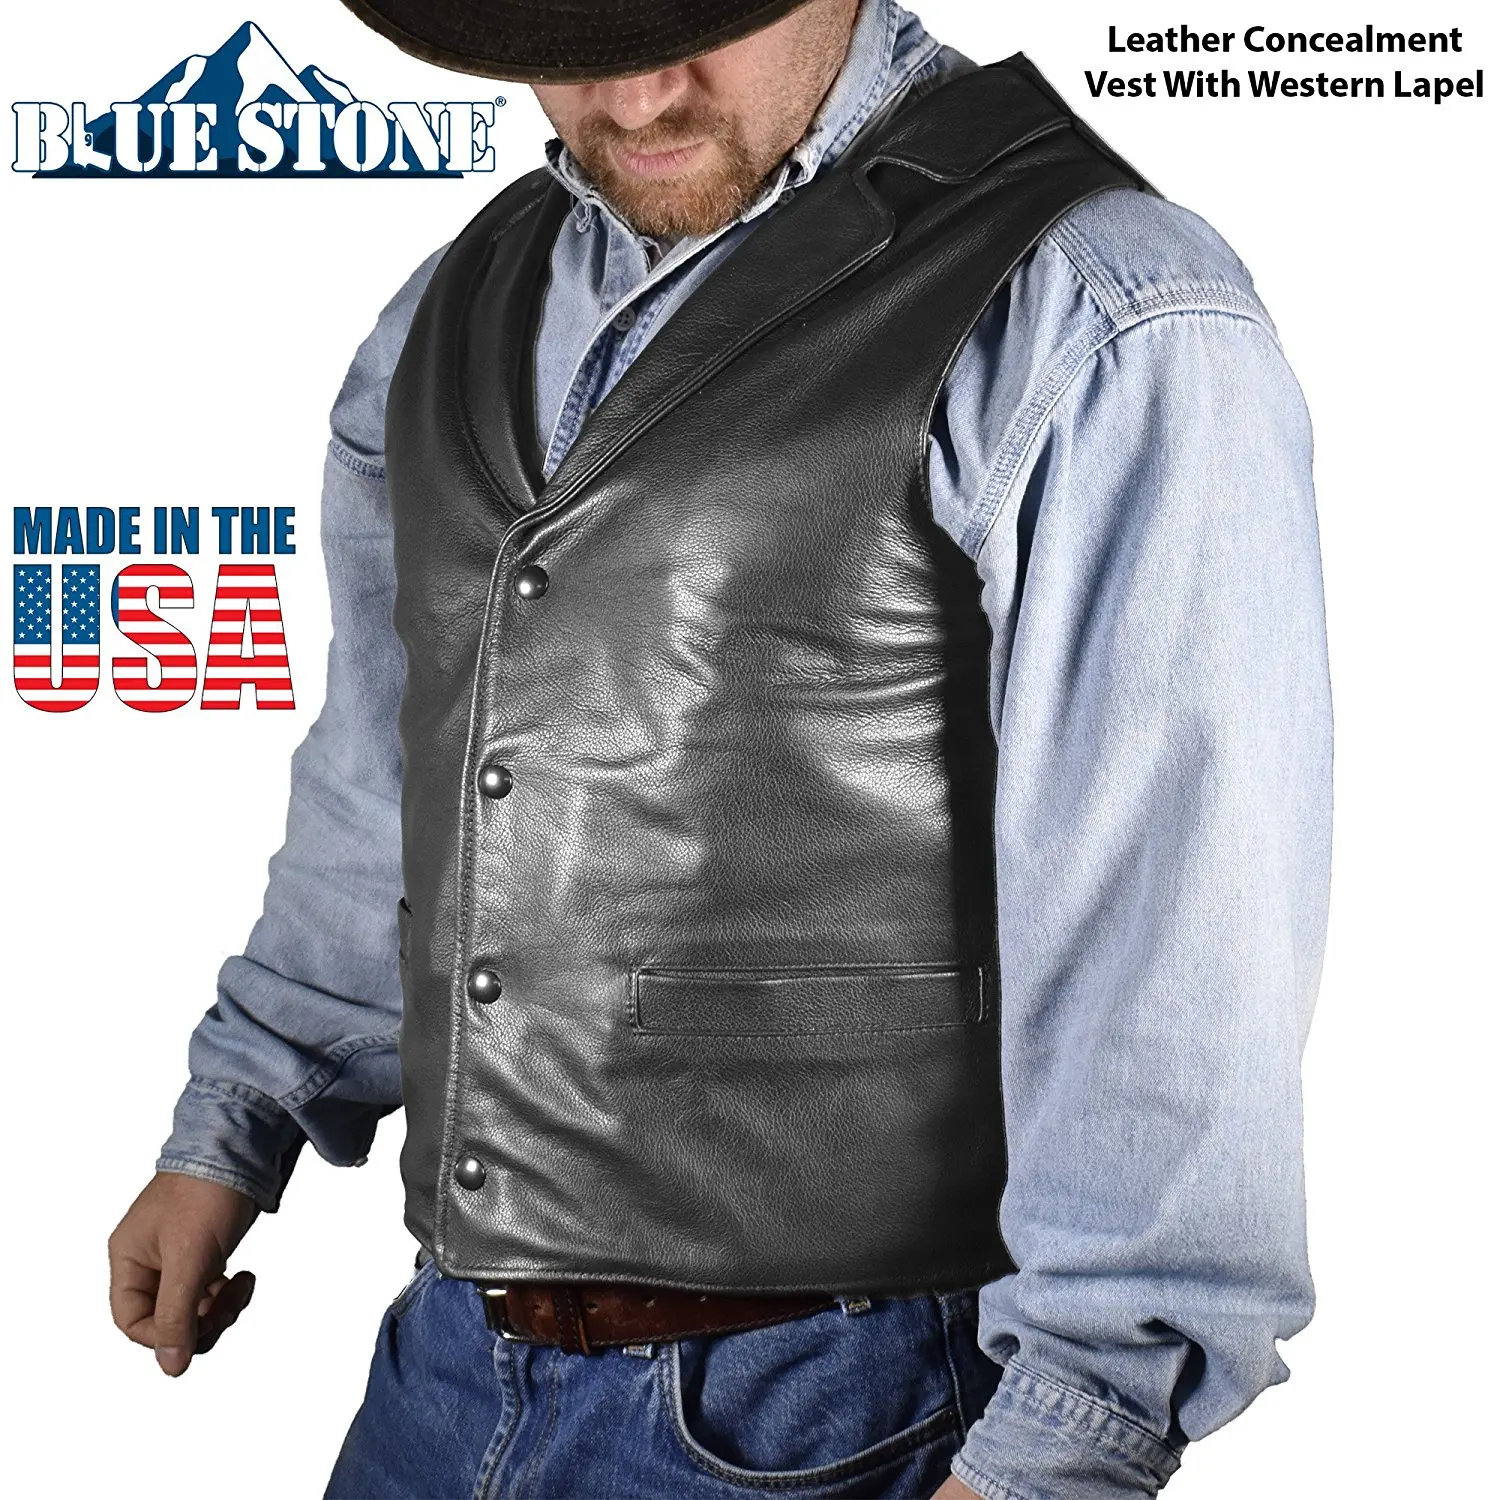 Cowboy Leather Vests For Men